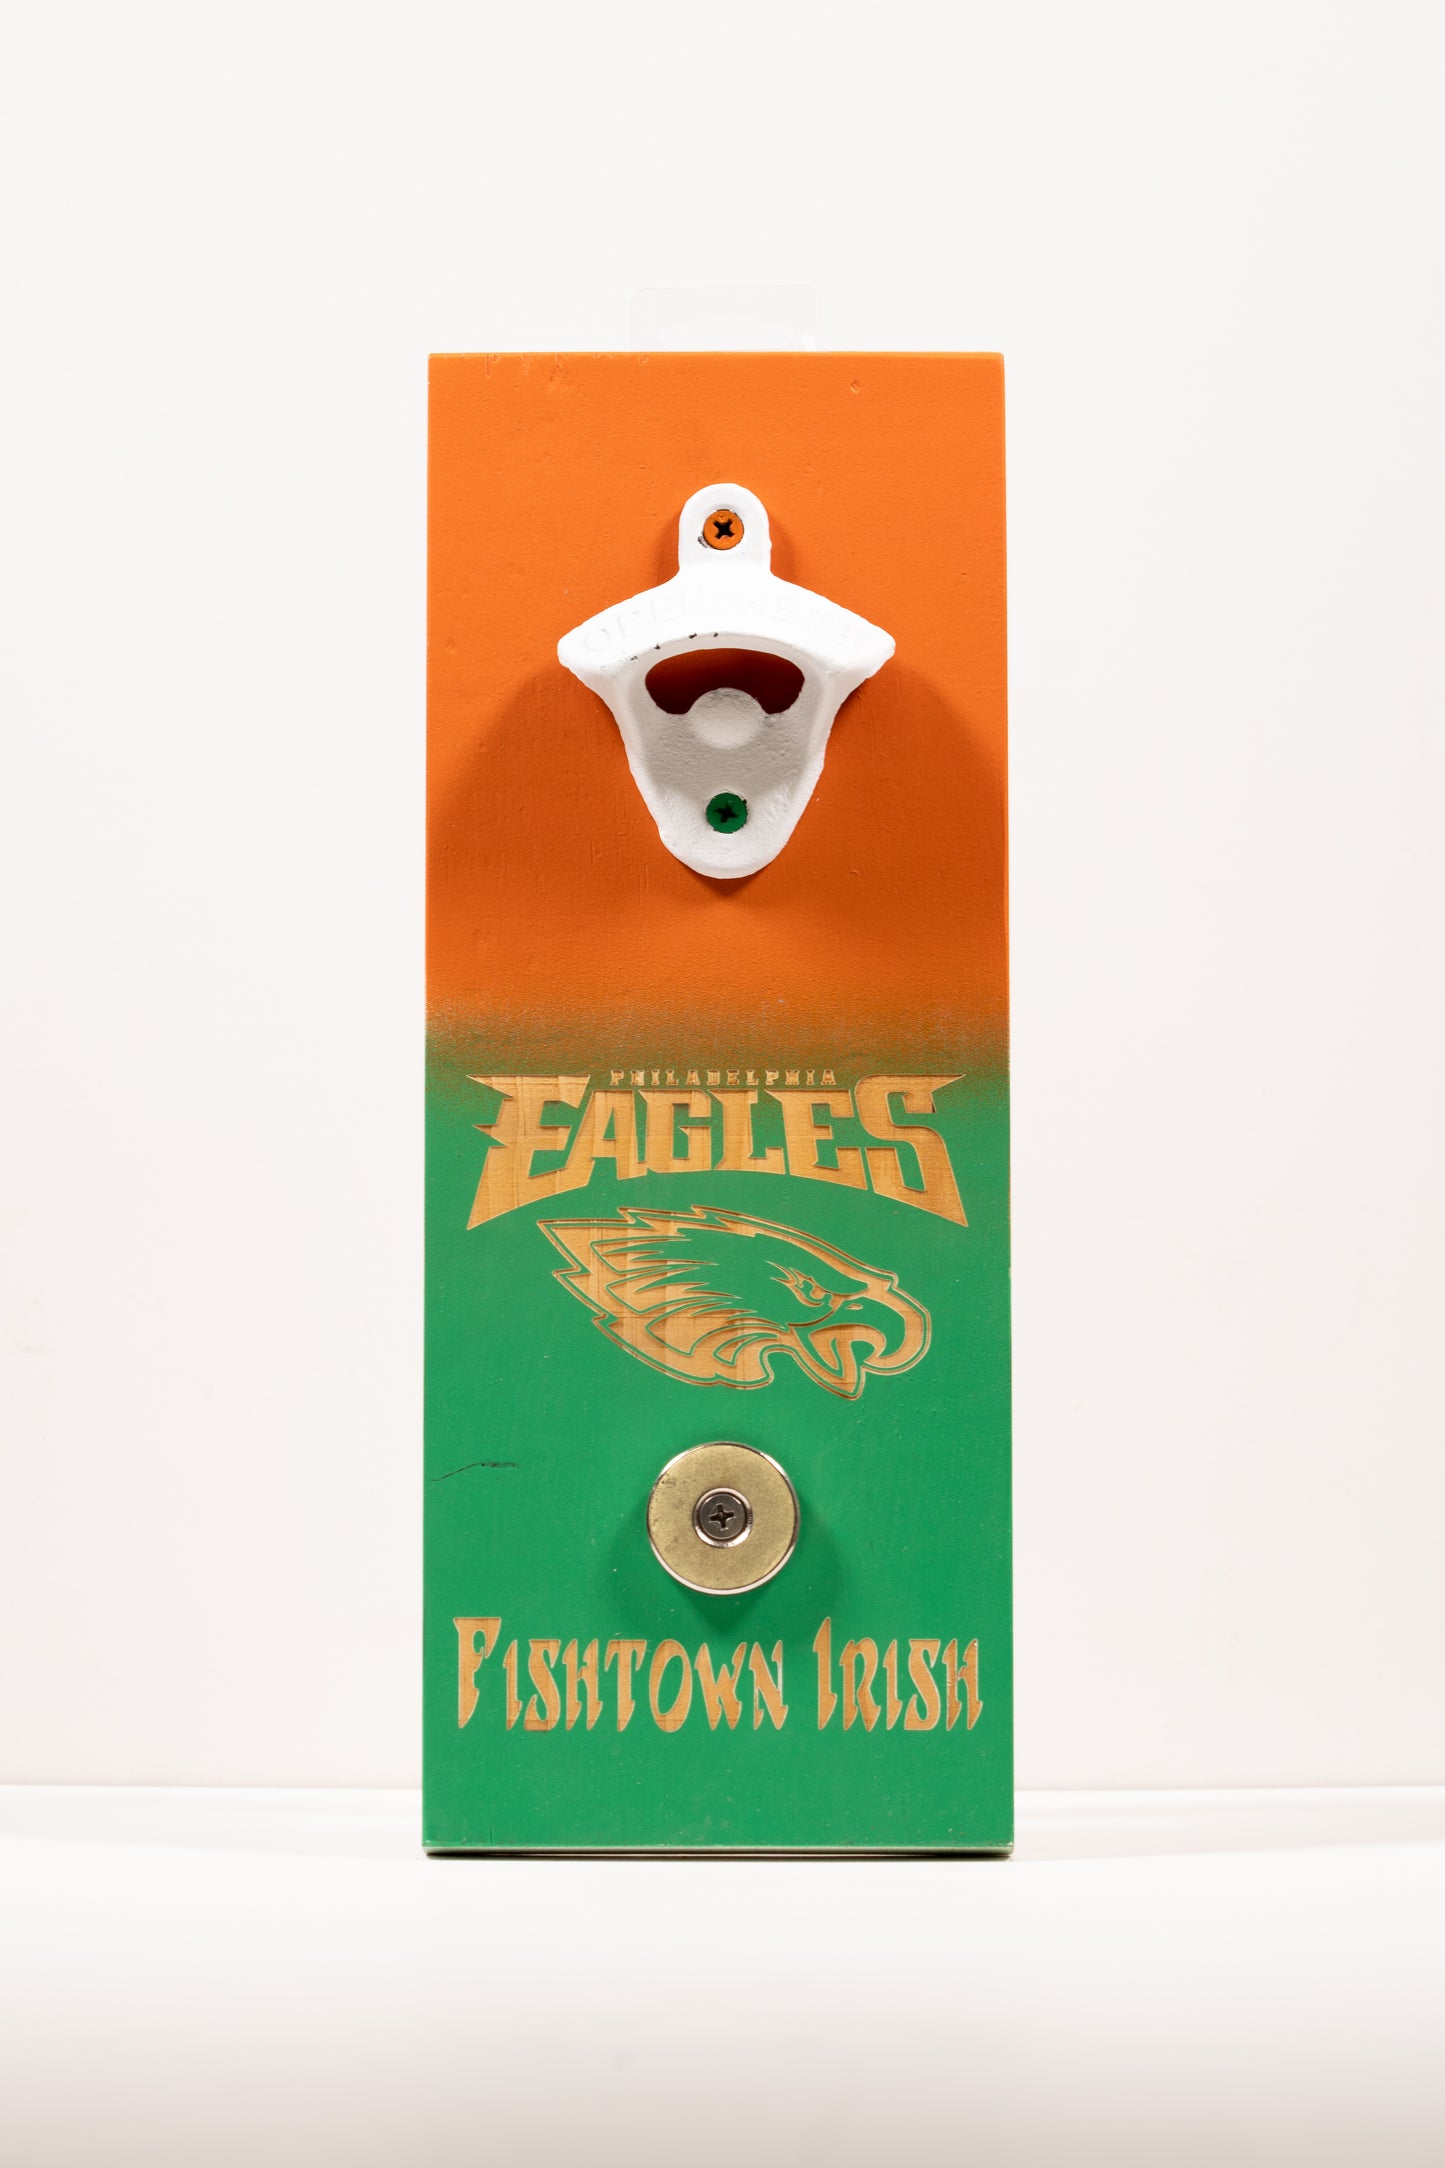 "Eagles" (Fishtown Irish) Magnetic Beer Bottle Opener